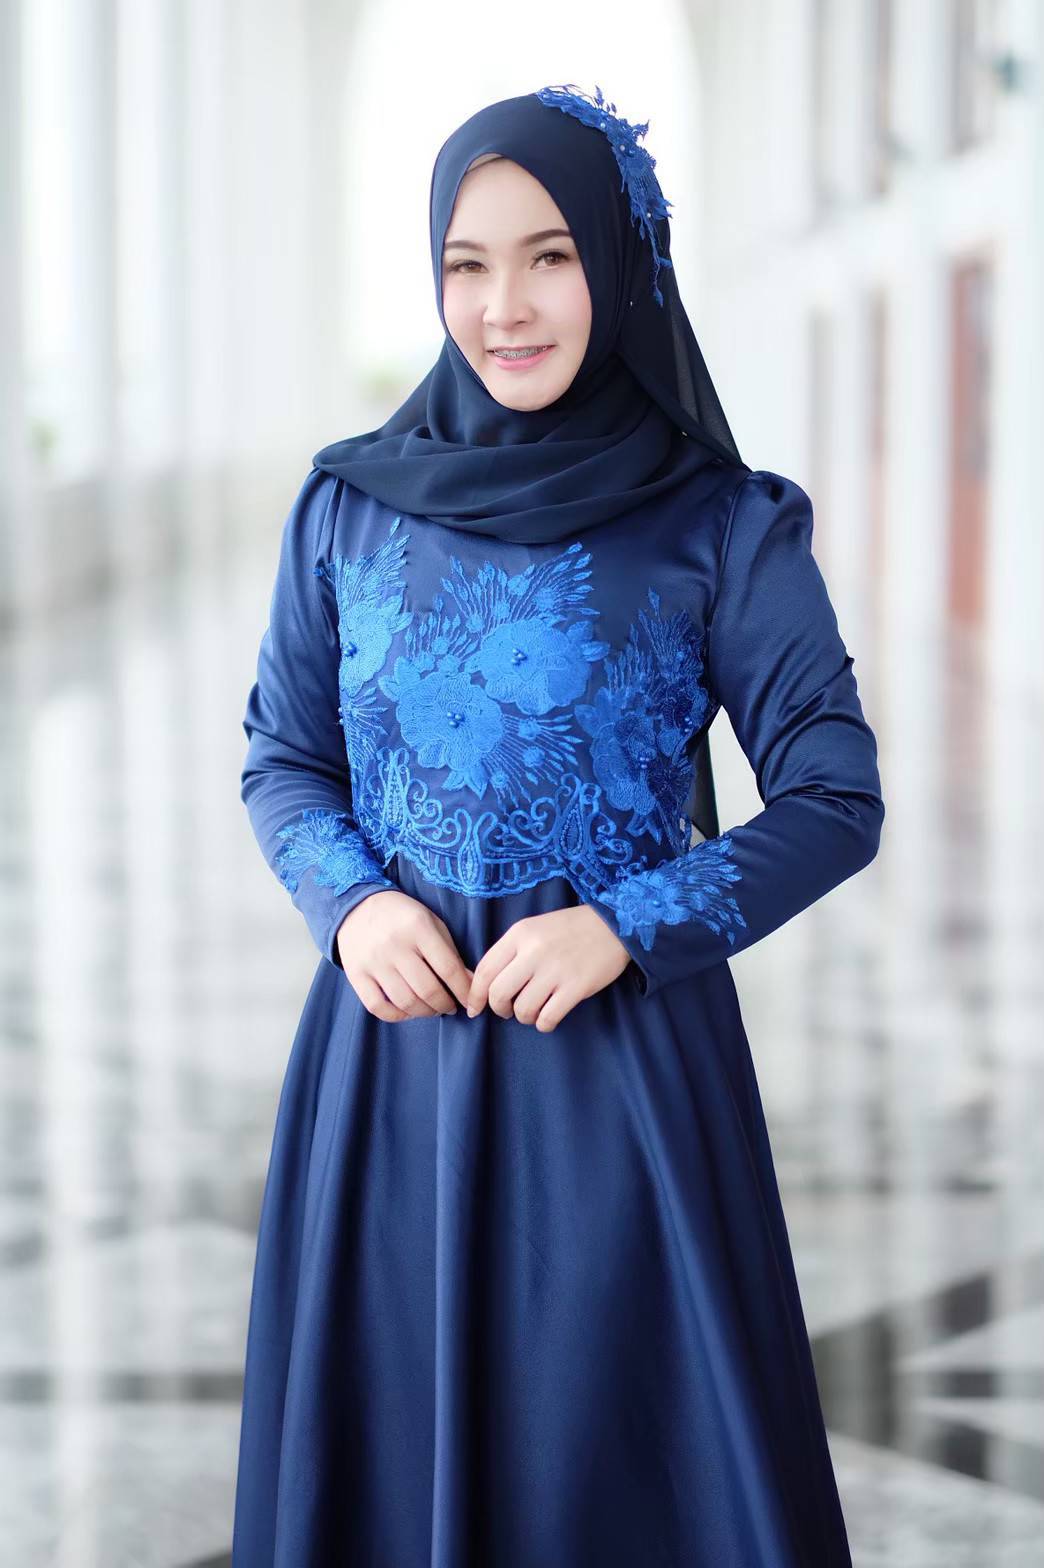 ชุดเดรสมุสลิม ผ้าใส่สบาย 👉🏻 ผ้าซาร่า ซิปหลัง ซิปแขน ลูกไม้หรูหรา ปักมุข สวยงาม